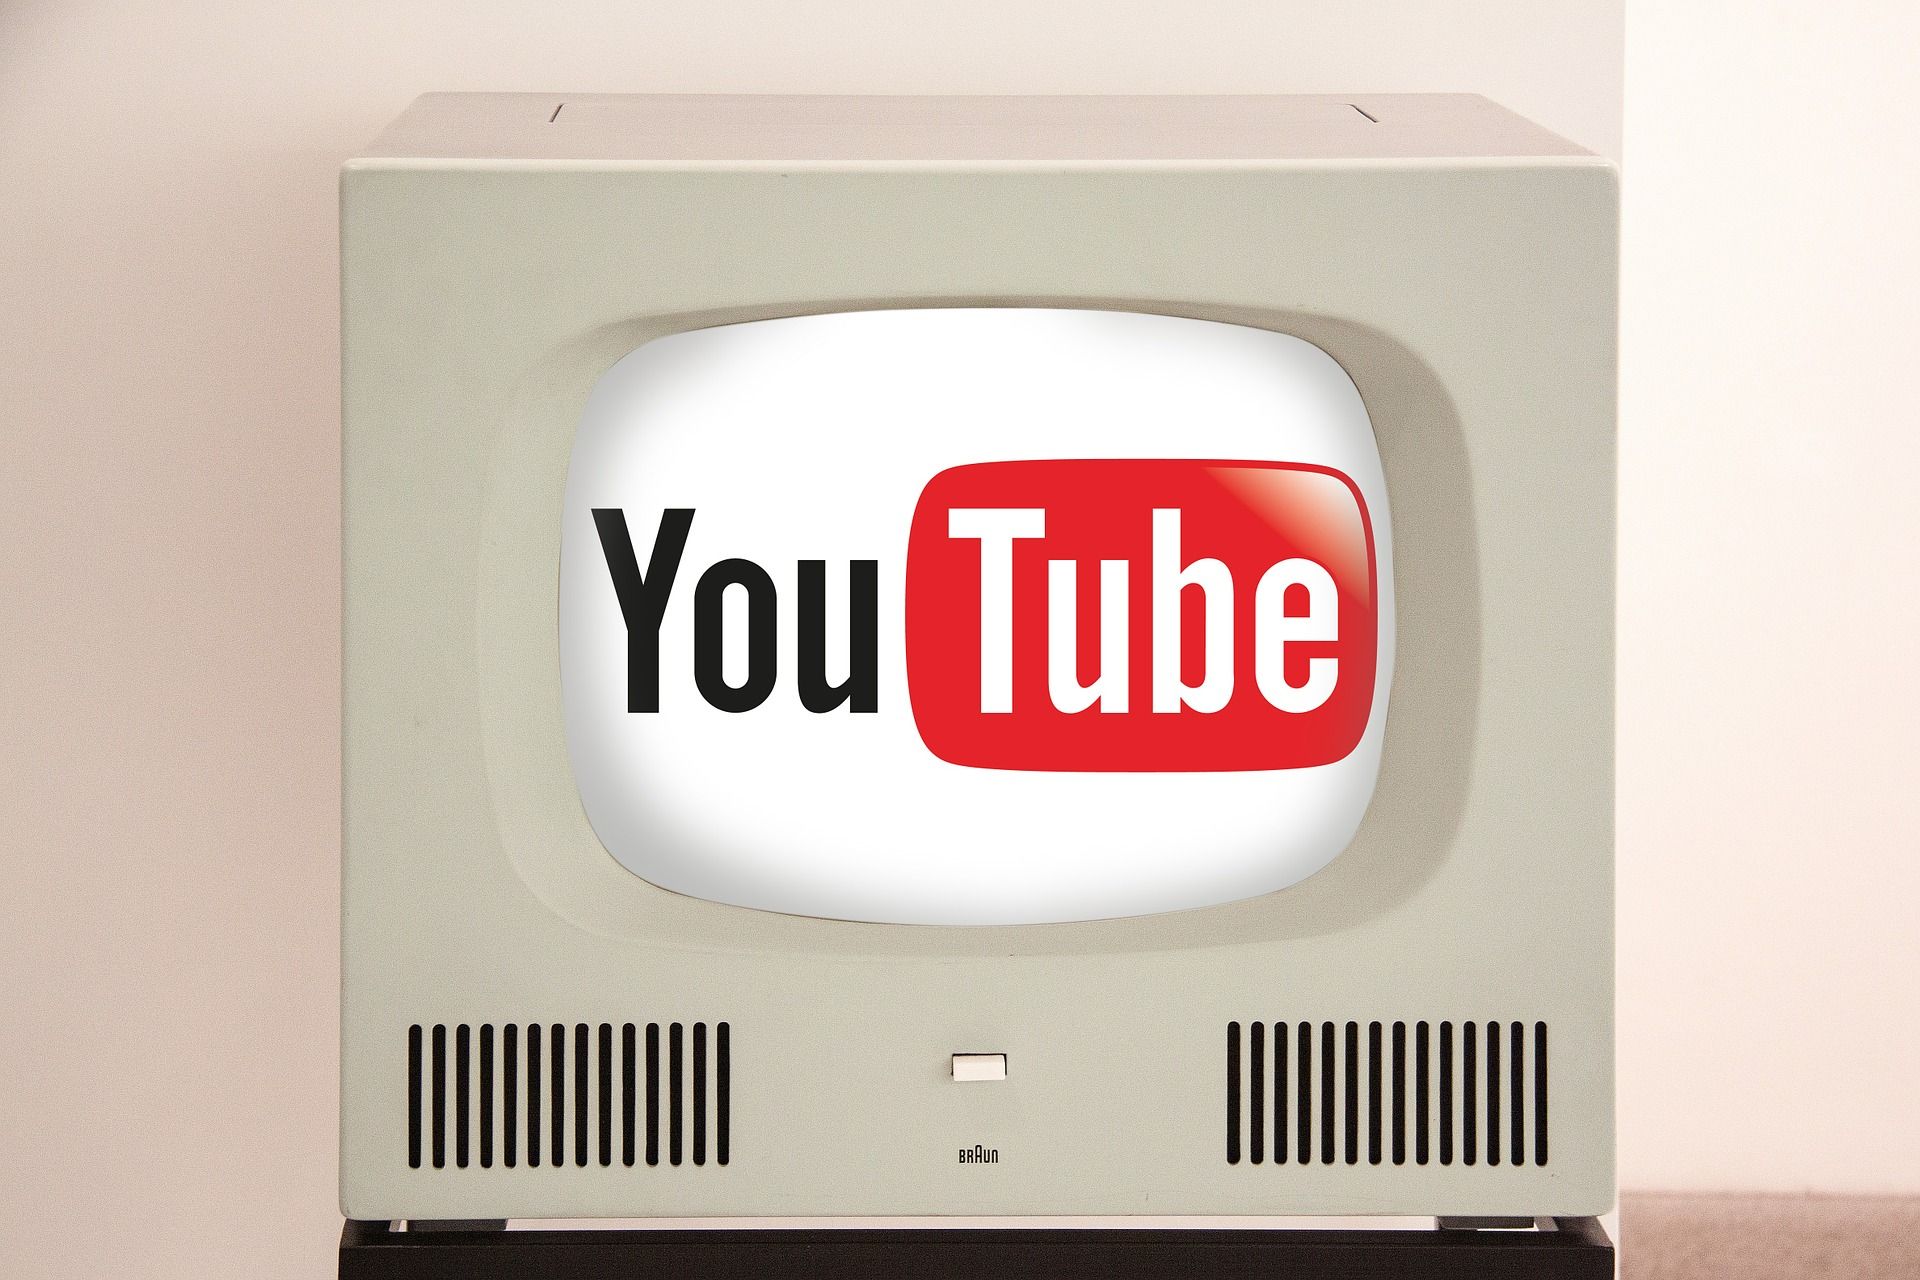 Requisitos para Monetizar Youtube con Adsense: Suscriptores y Visitas